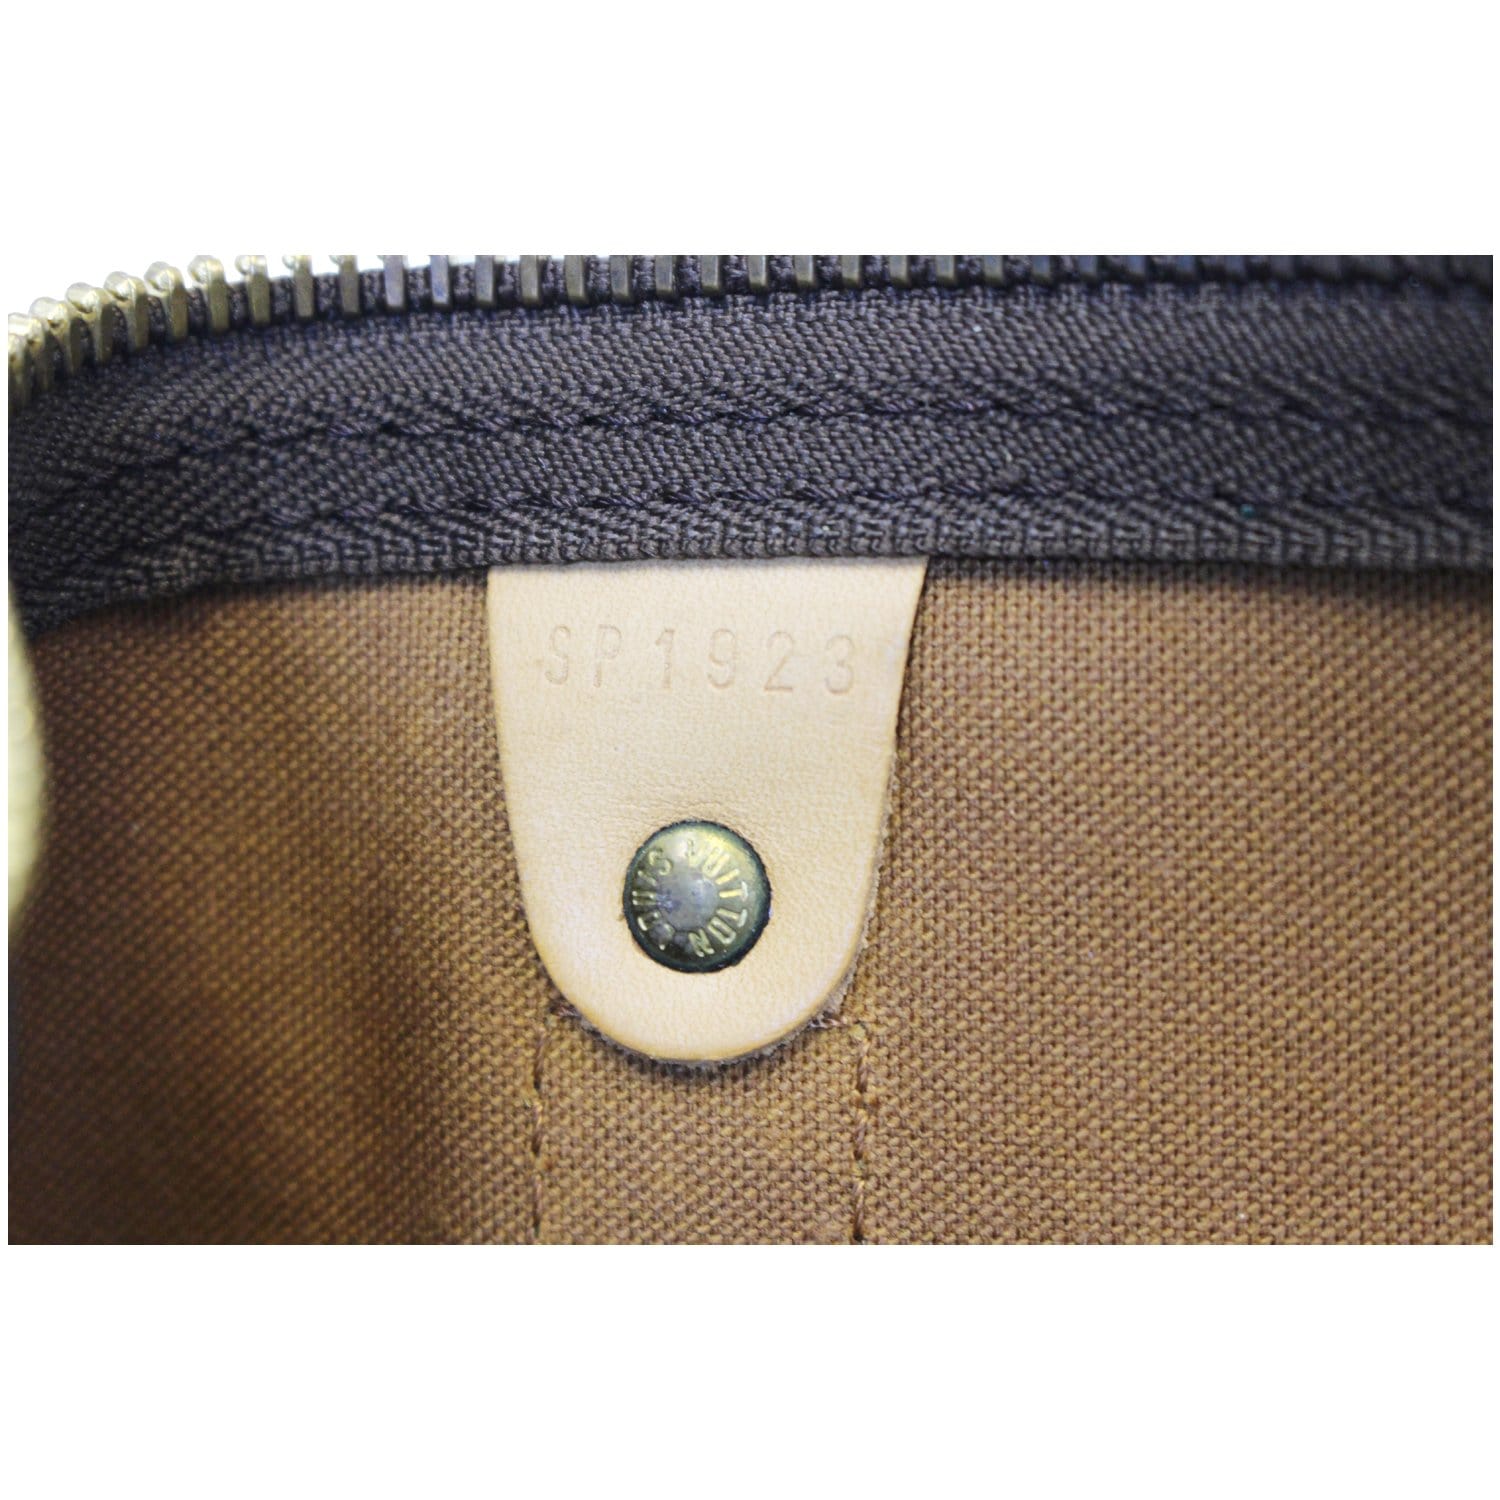 Bolsa de viaje Louis Vuitton Keepall 45 cm en lona Monogram marrón